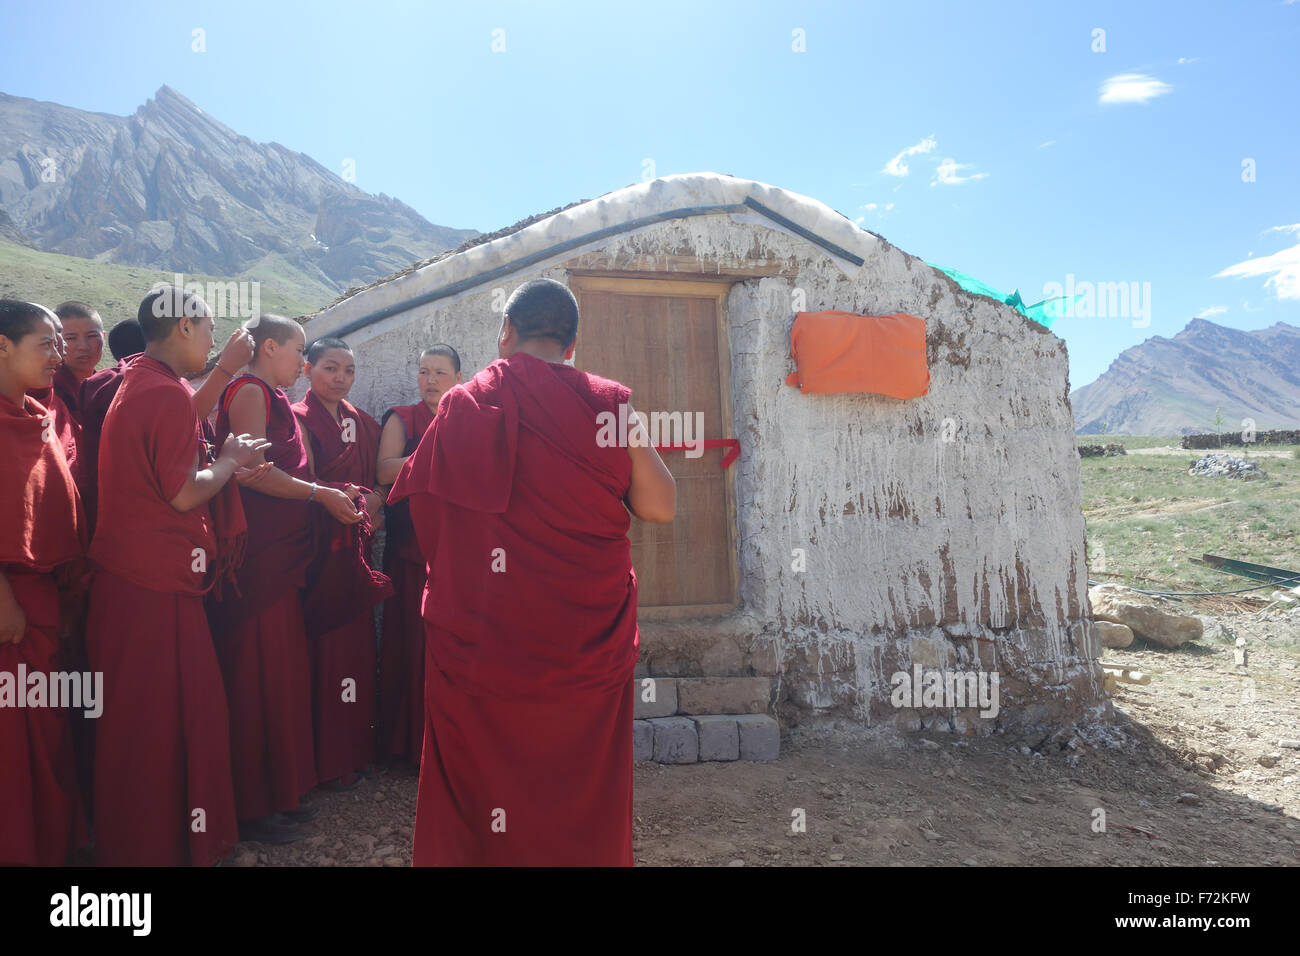 Les nonnes bouddhistes à l'ouverture d'une nouvelle entreprise sociale/bénévole construit une serre, le Spiti Valley, Himalaya Indien Banque D'Images